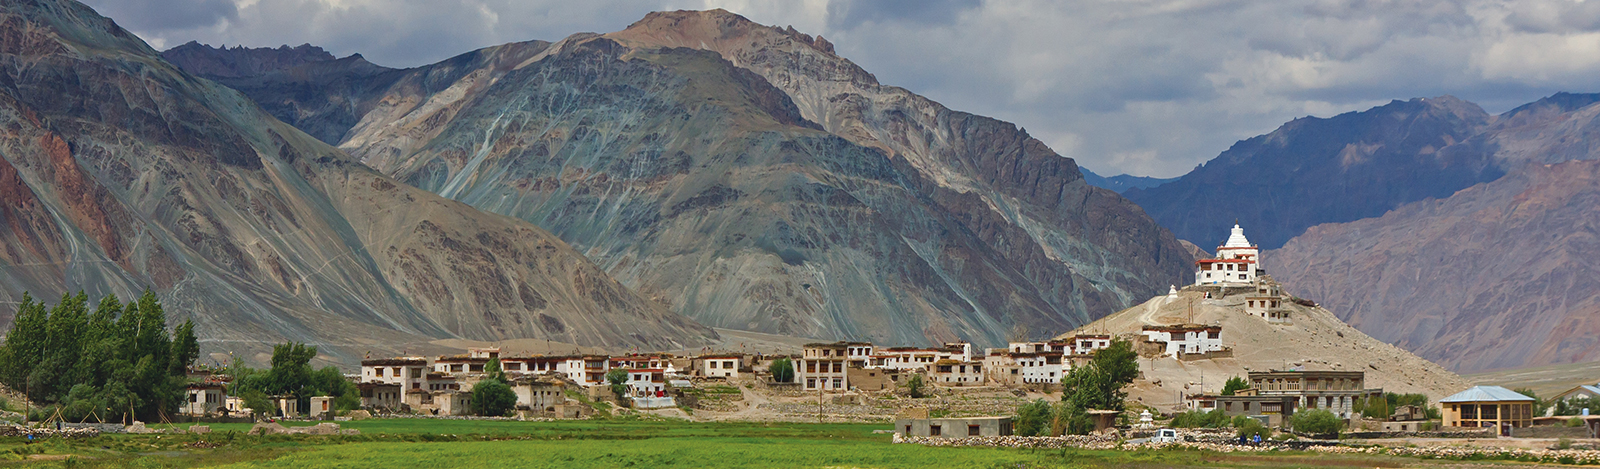 Ladakh Tour of India